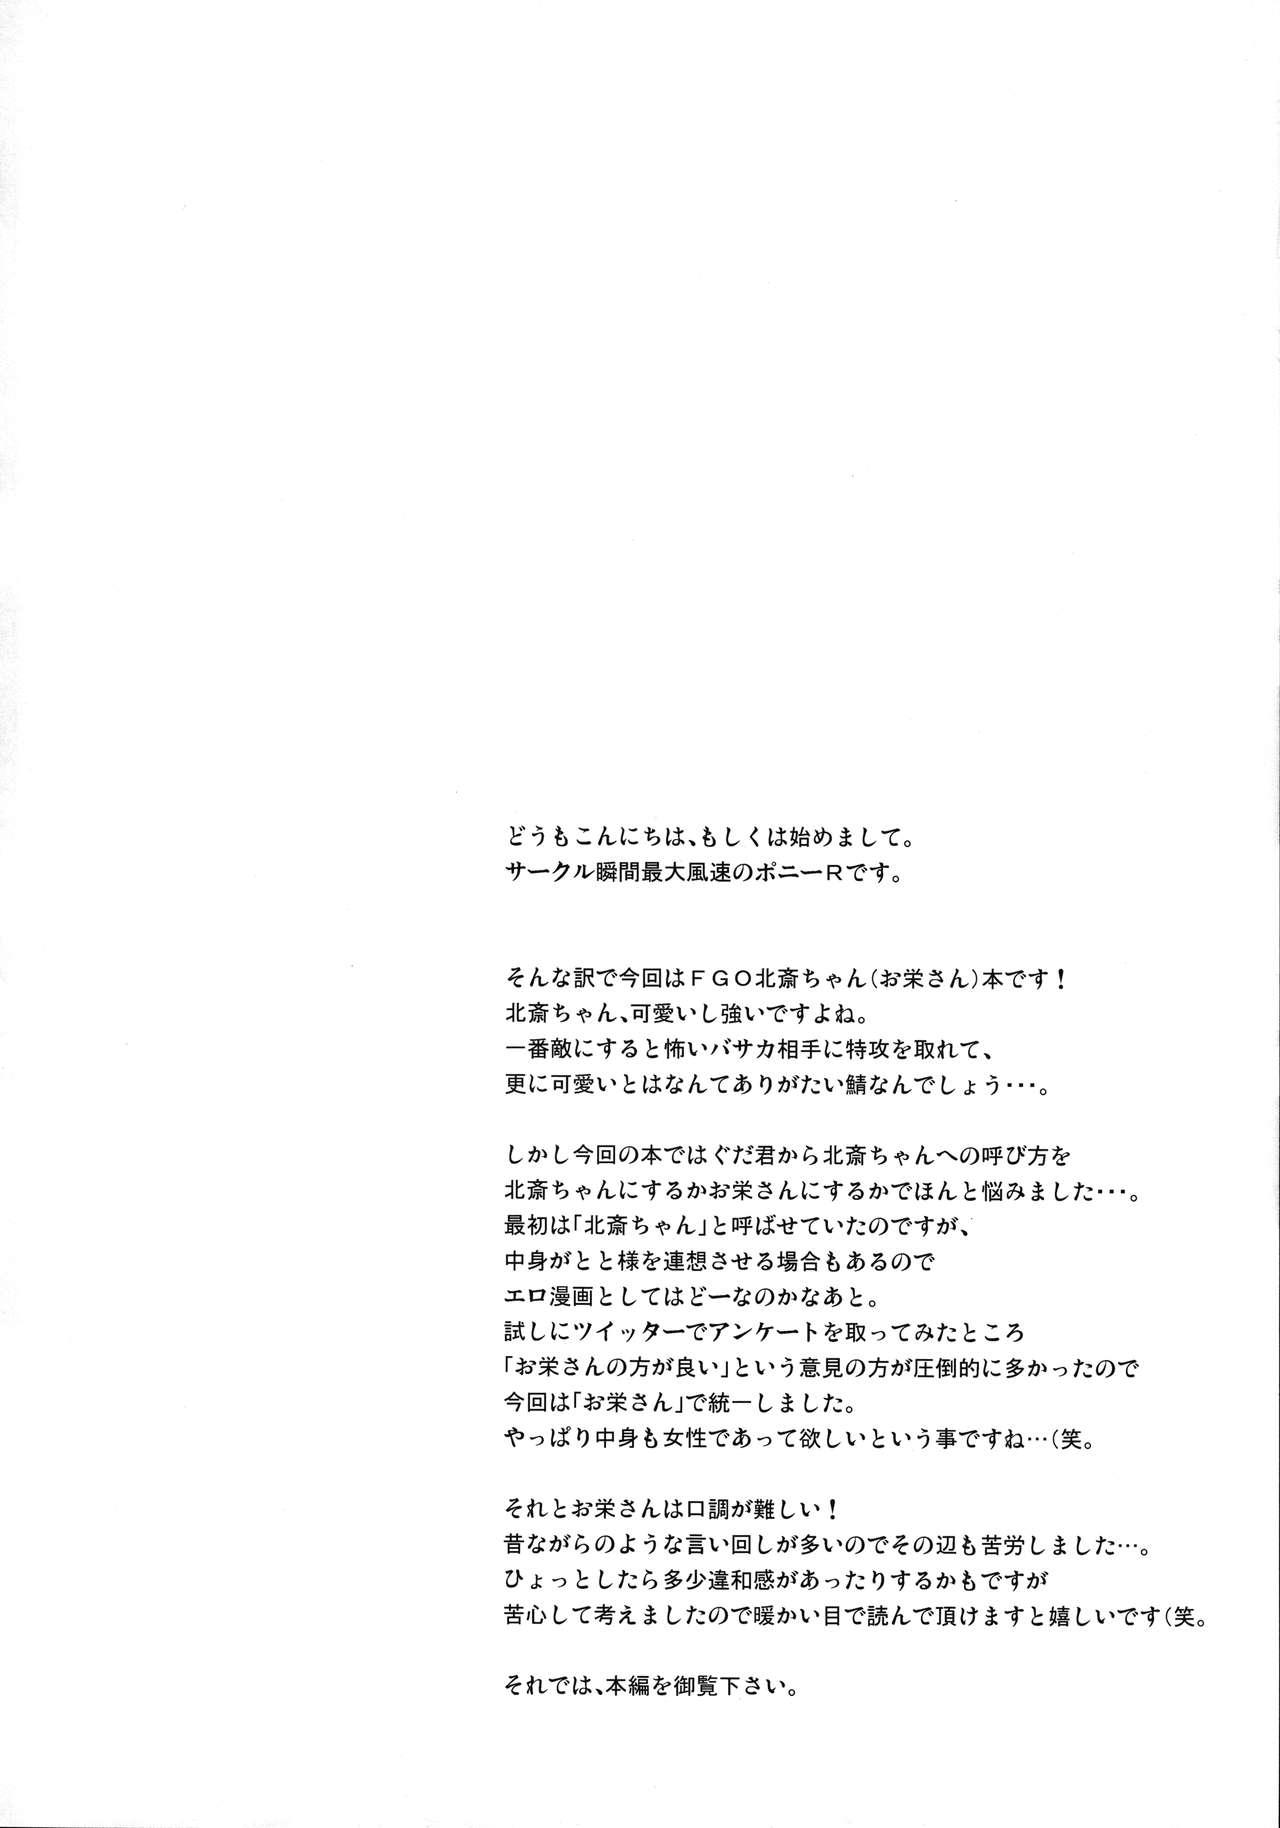 Hung Hokusai-chan ga Okuchi de Teinei ni Tannen ni Nando mo Nuite Kurete kara no Honban - Fate grand order Oriental - Page 3